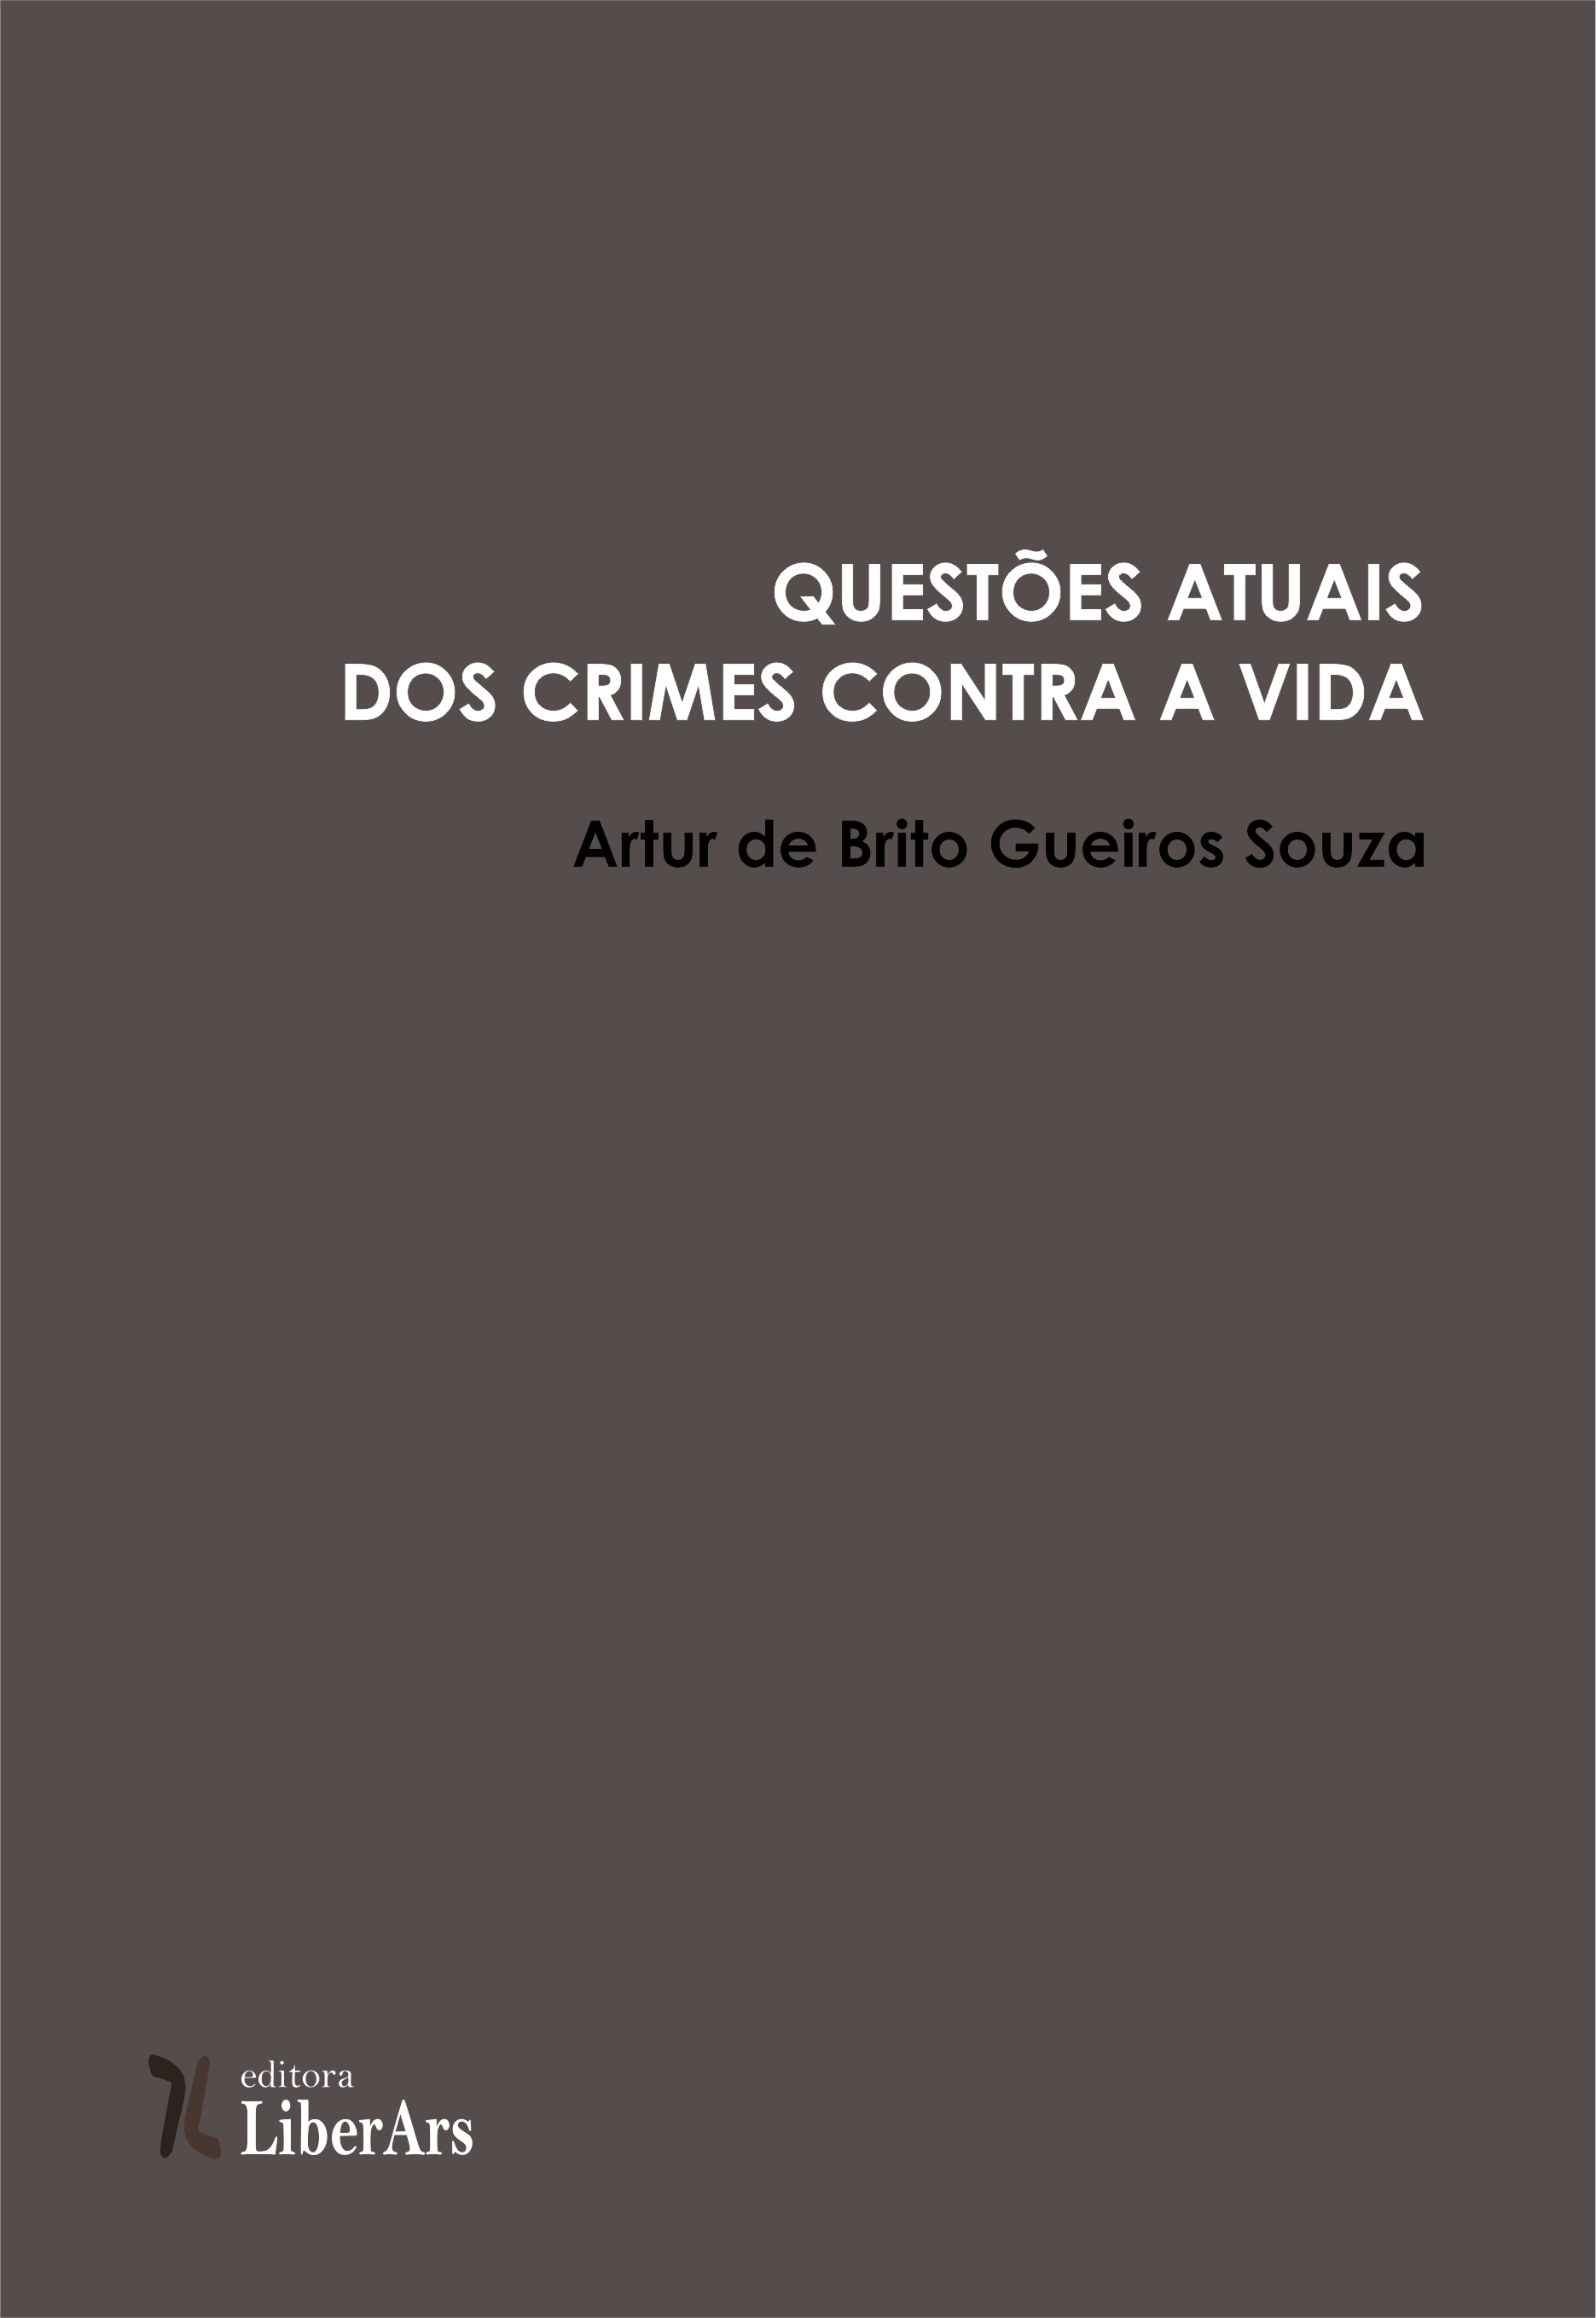 Questões atuais dos crimes contra a vida, livro de Artur de Brito Gueiros Souza